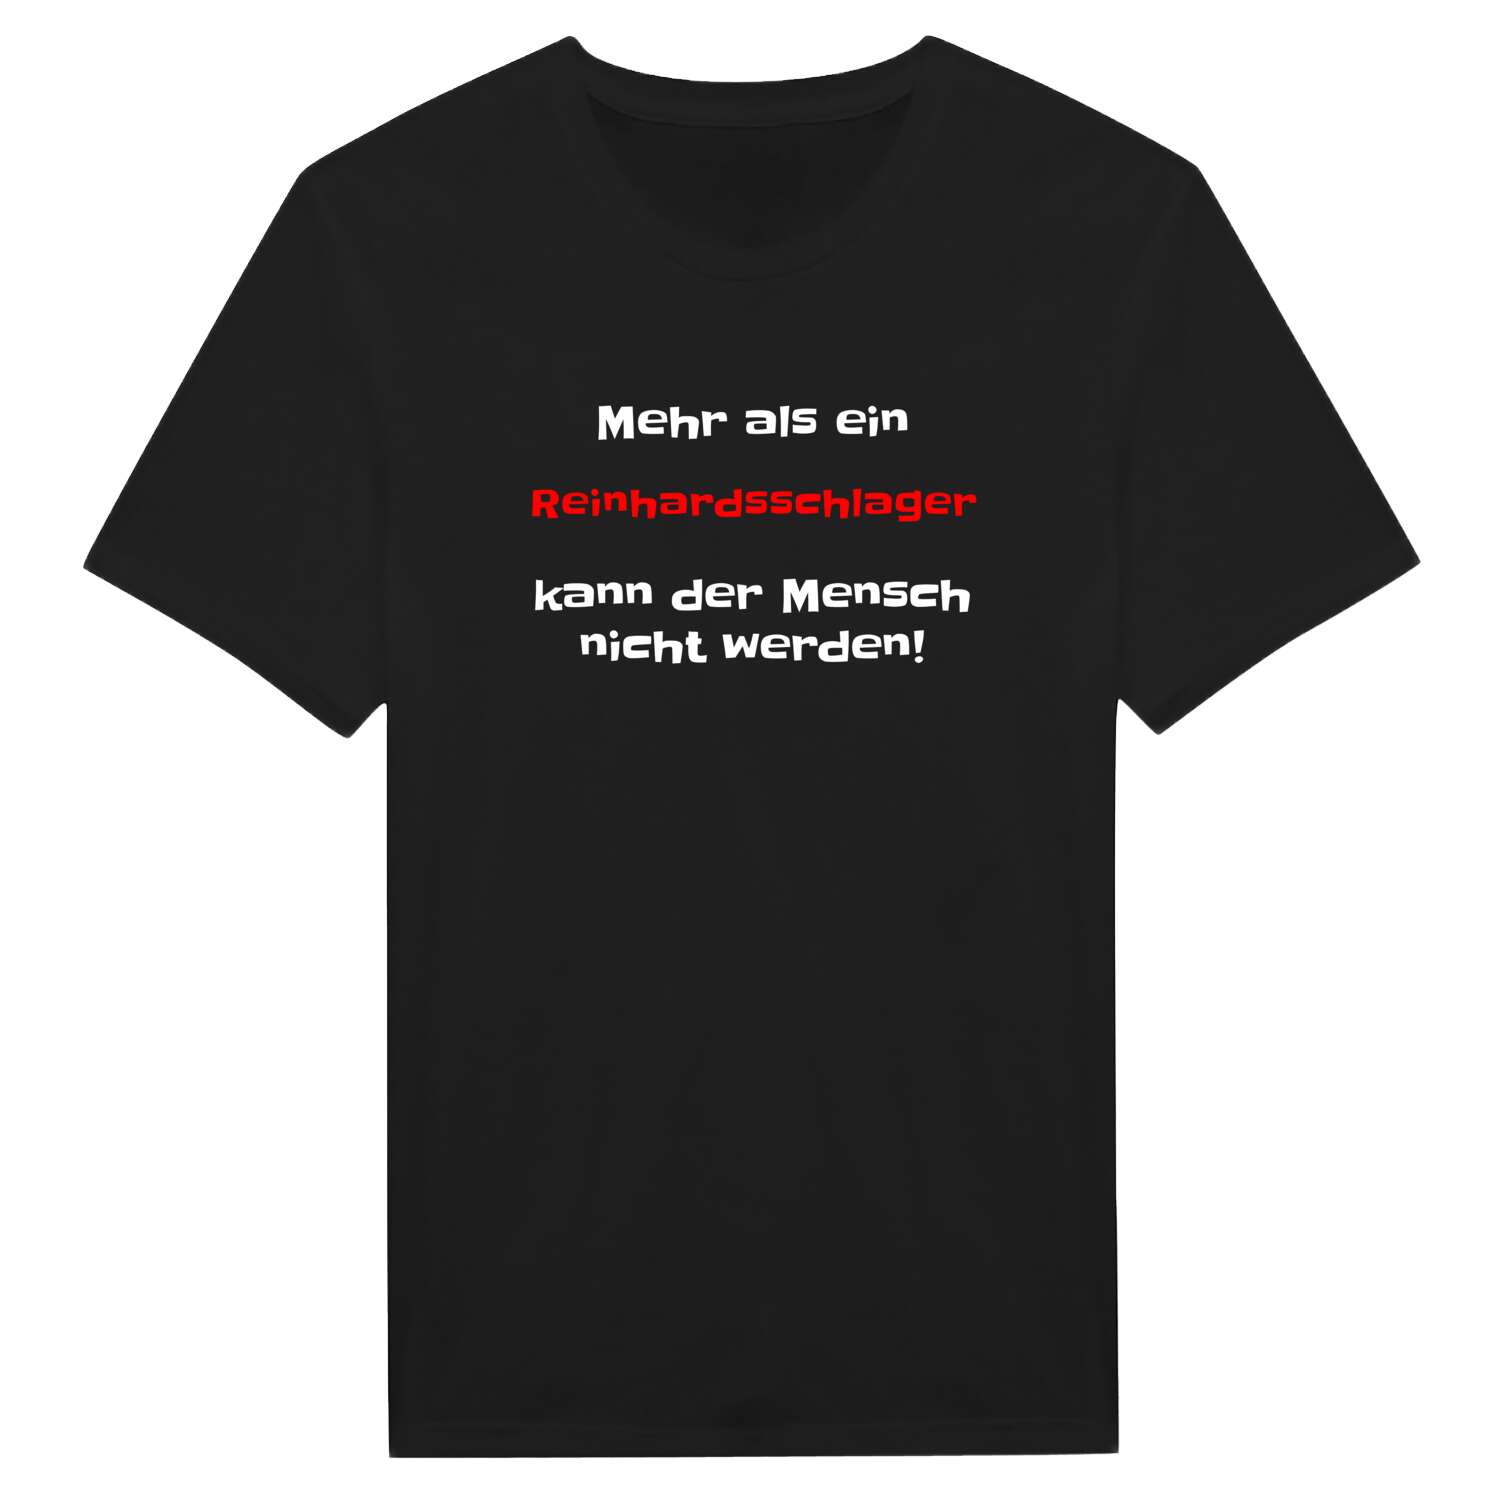 Reinhardsschlag T-Shirt »Mehr als ein«